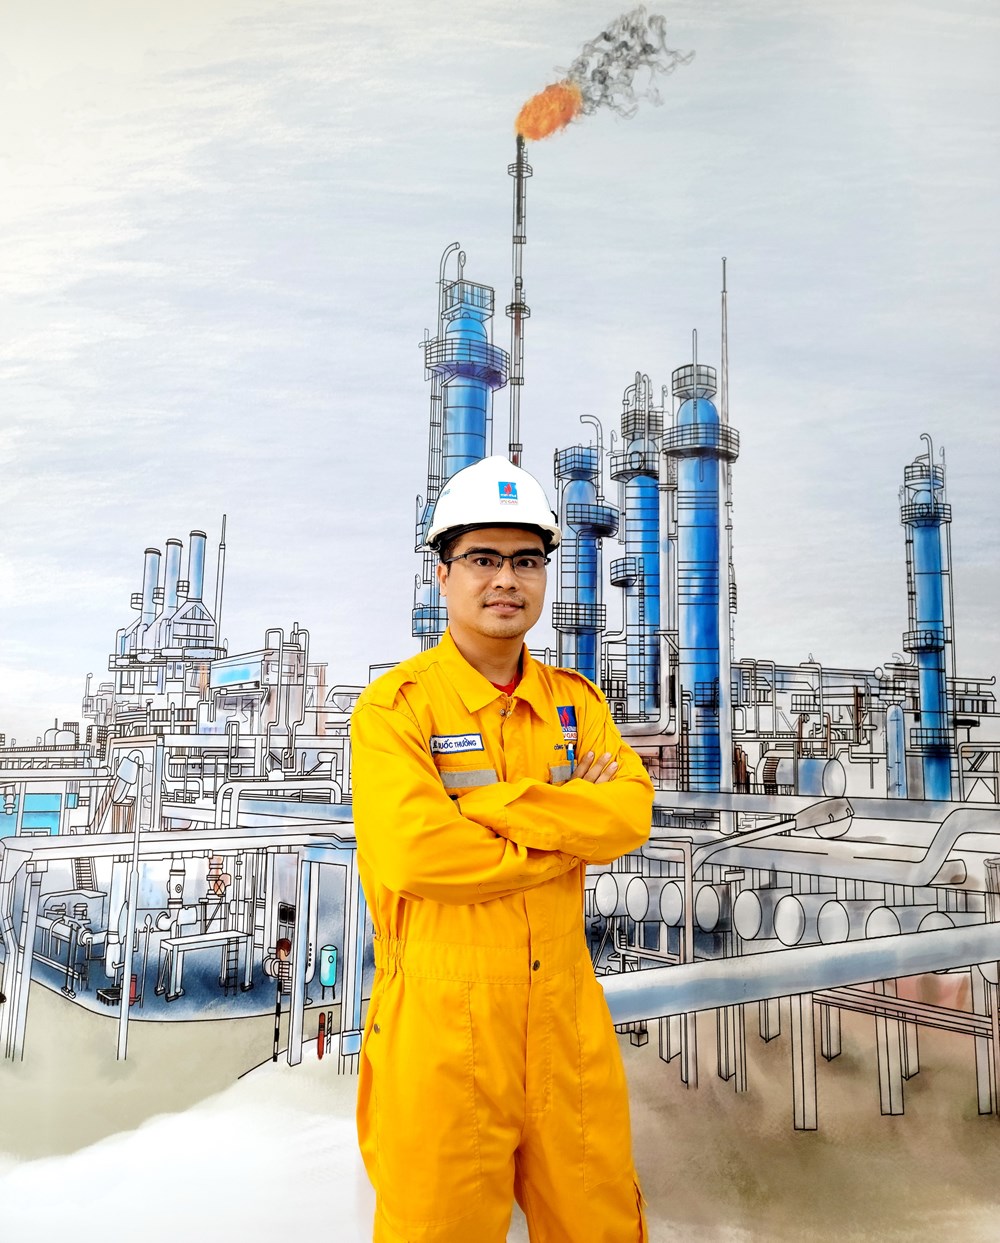 Kỹ sư Lê Quốc Thưởng: Bản lĩnh người thợ trẻ trong ngành công nghiệp khí - ảnh 1